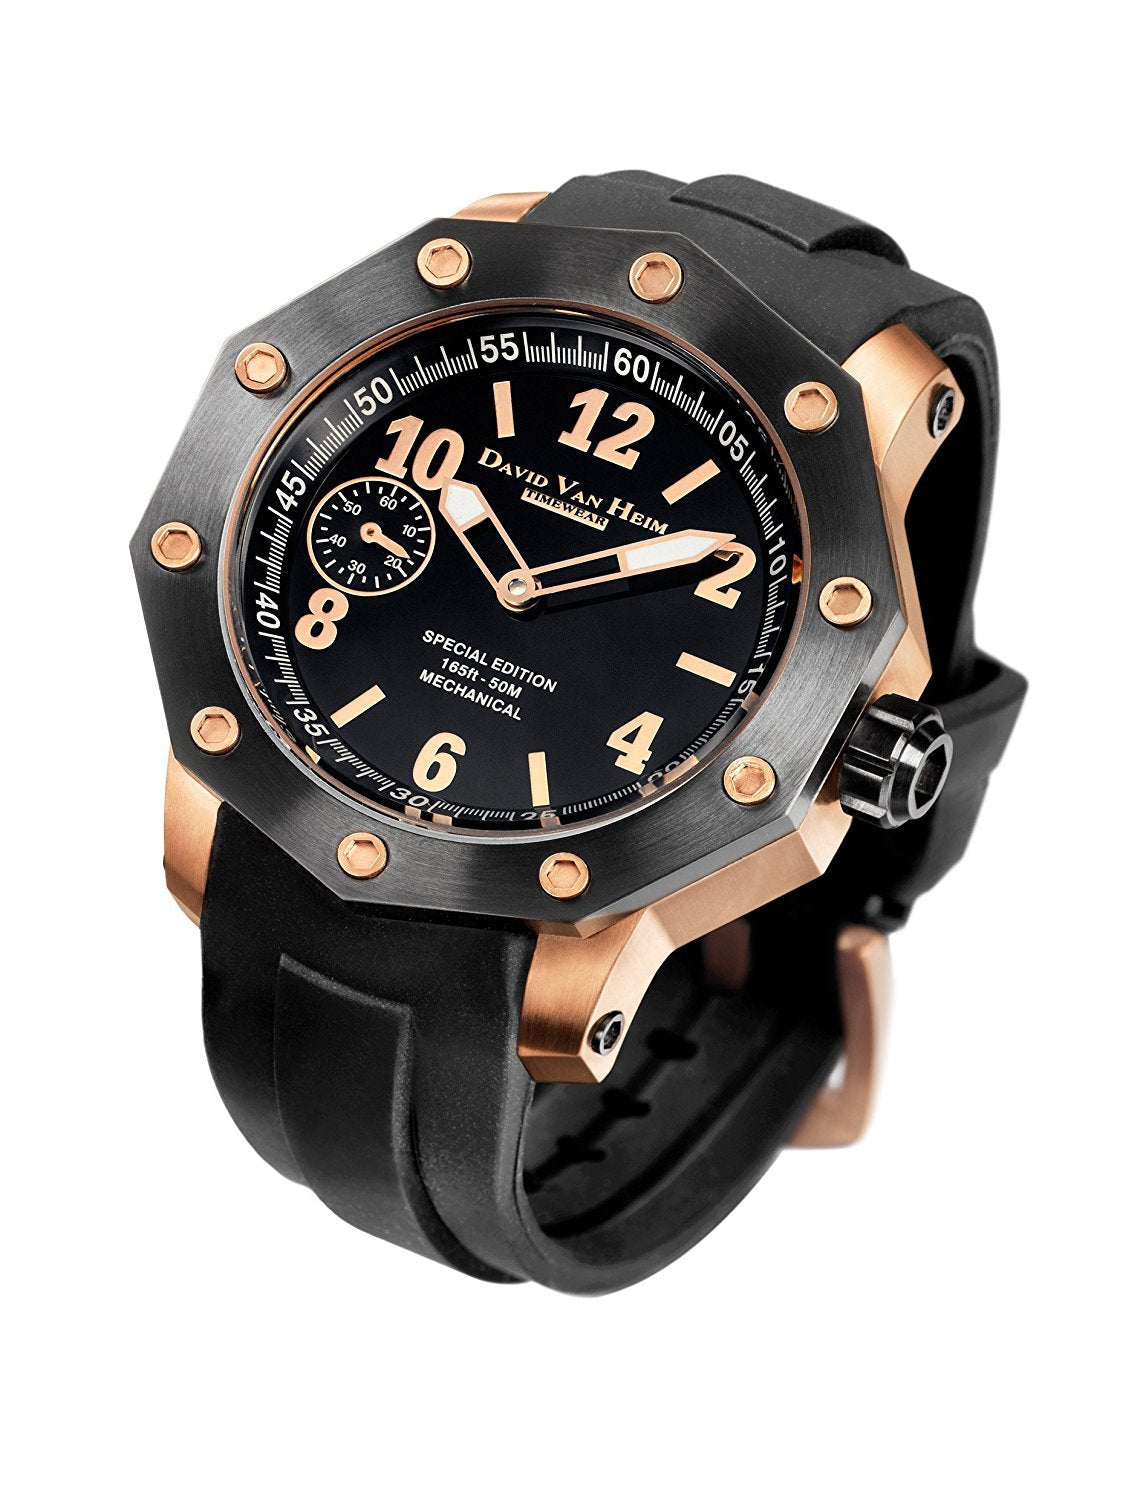 David Van Heim Swiss Mechanical Irea Men's Watch collection VH-37